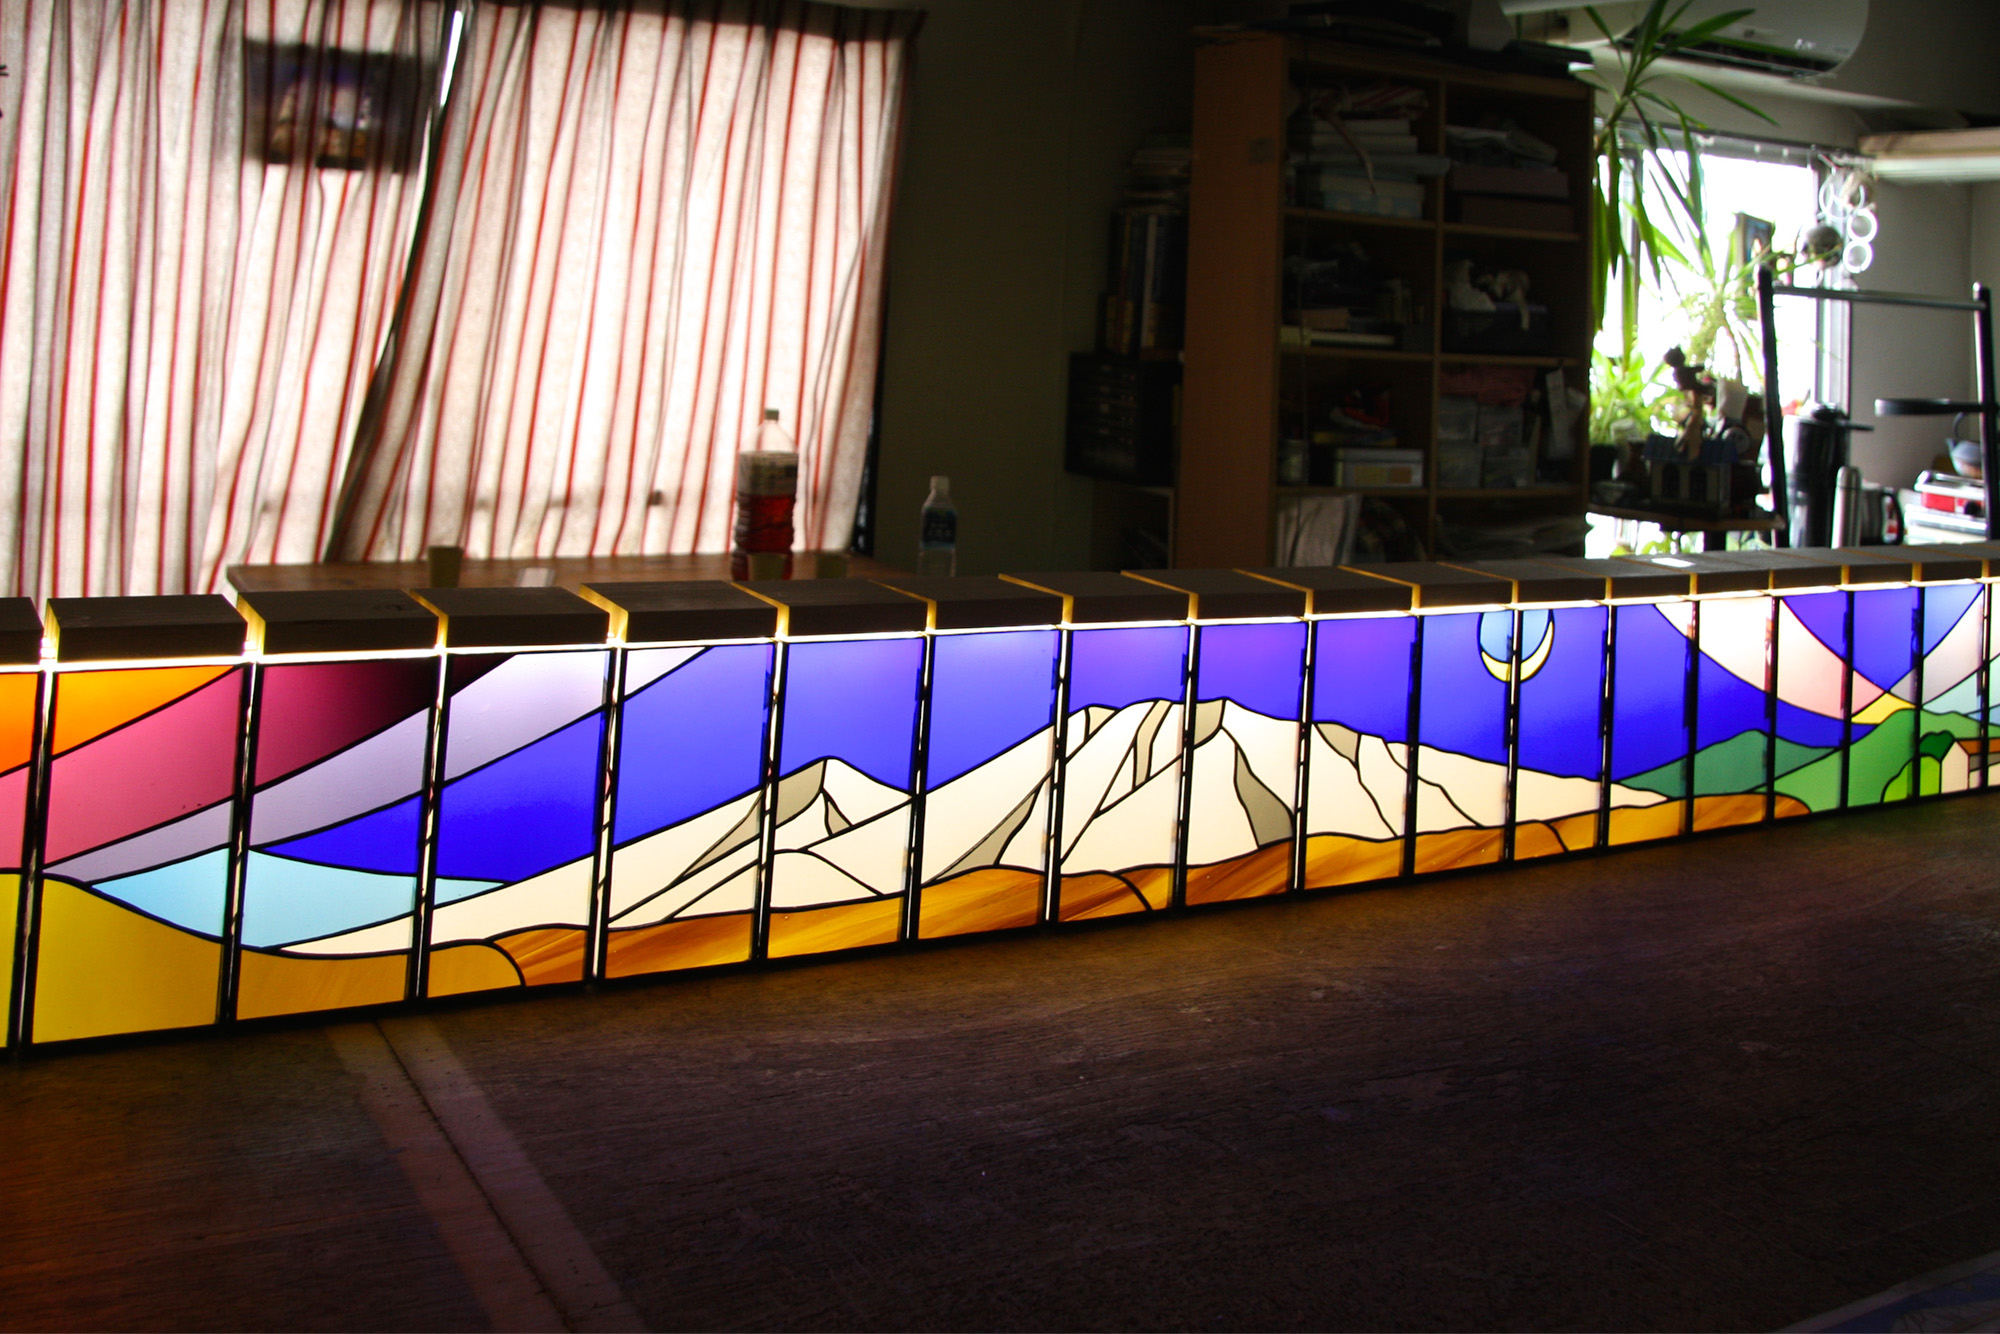 軽井沢のステンドグラス のアイキャッチ画像